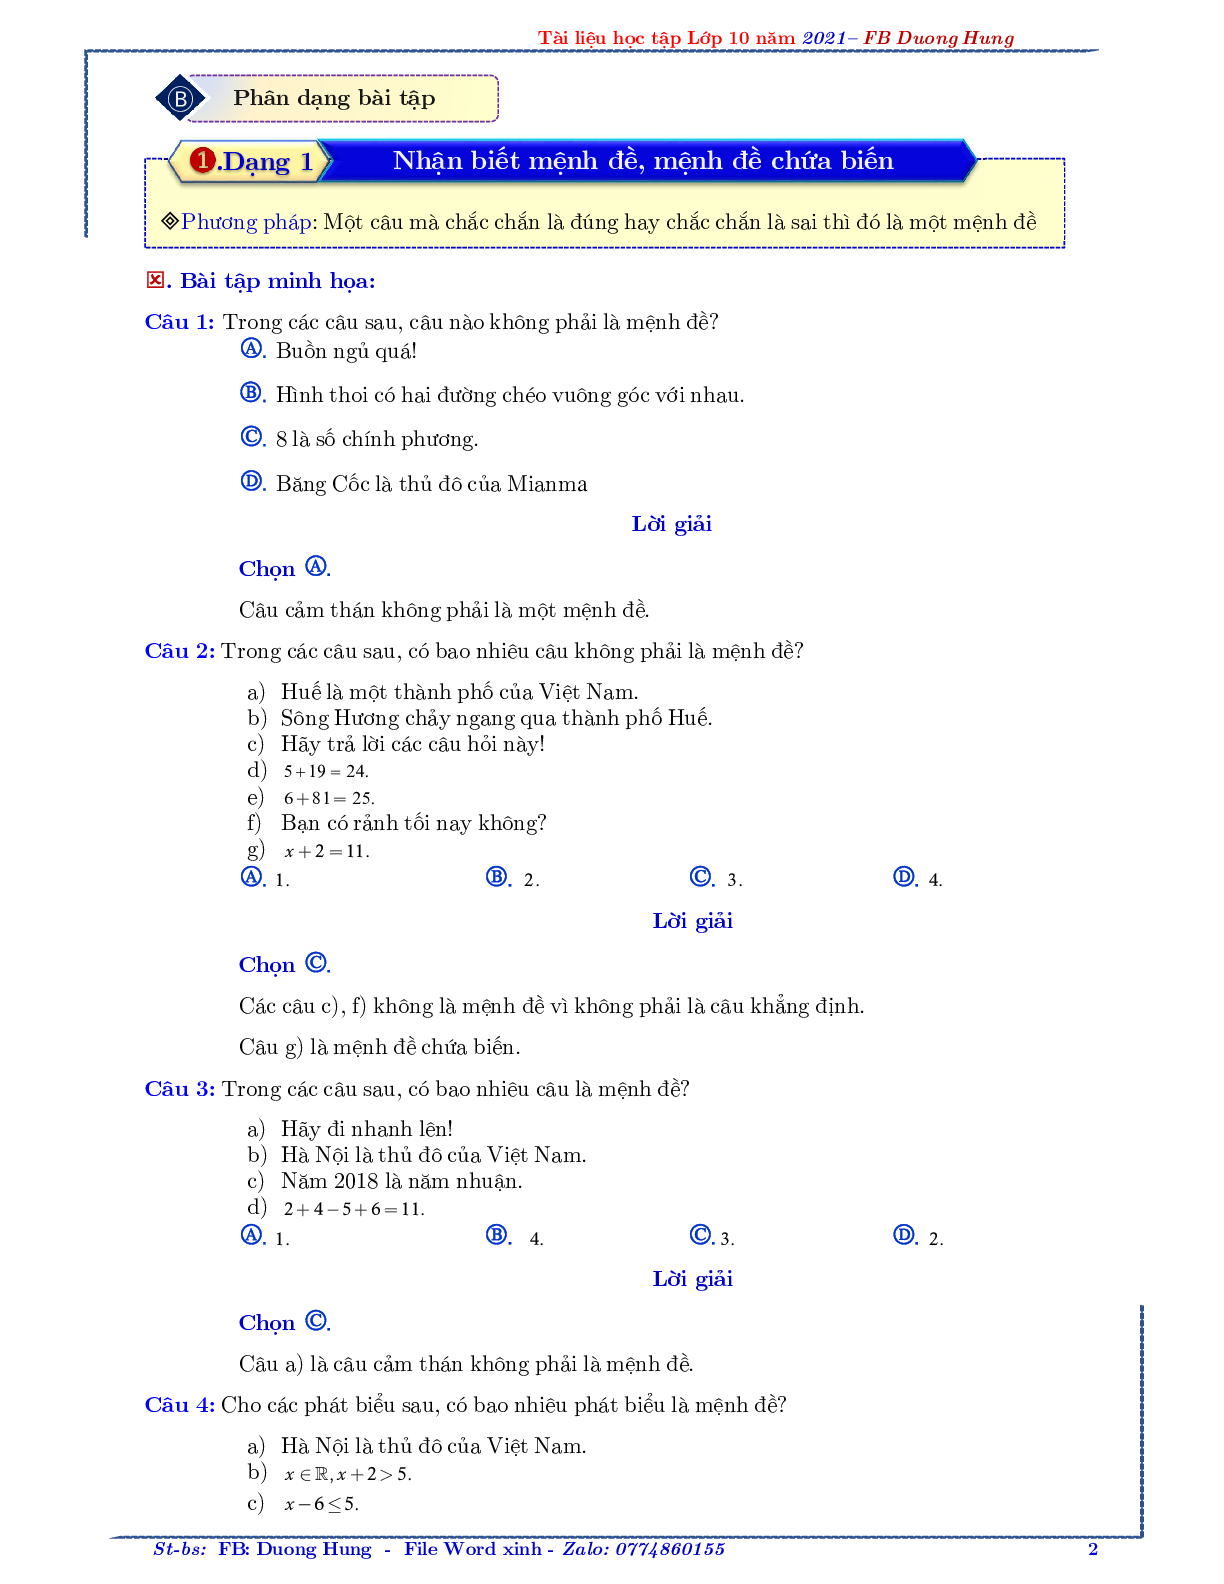 Chuyên đề về mệnh đề và tập hợp - bản 1 (trang 2)